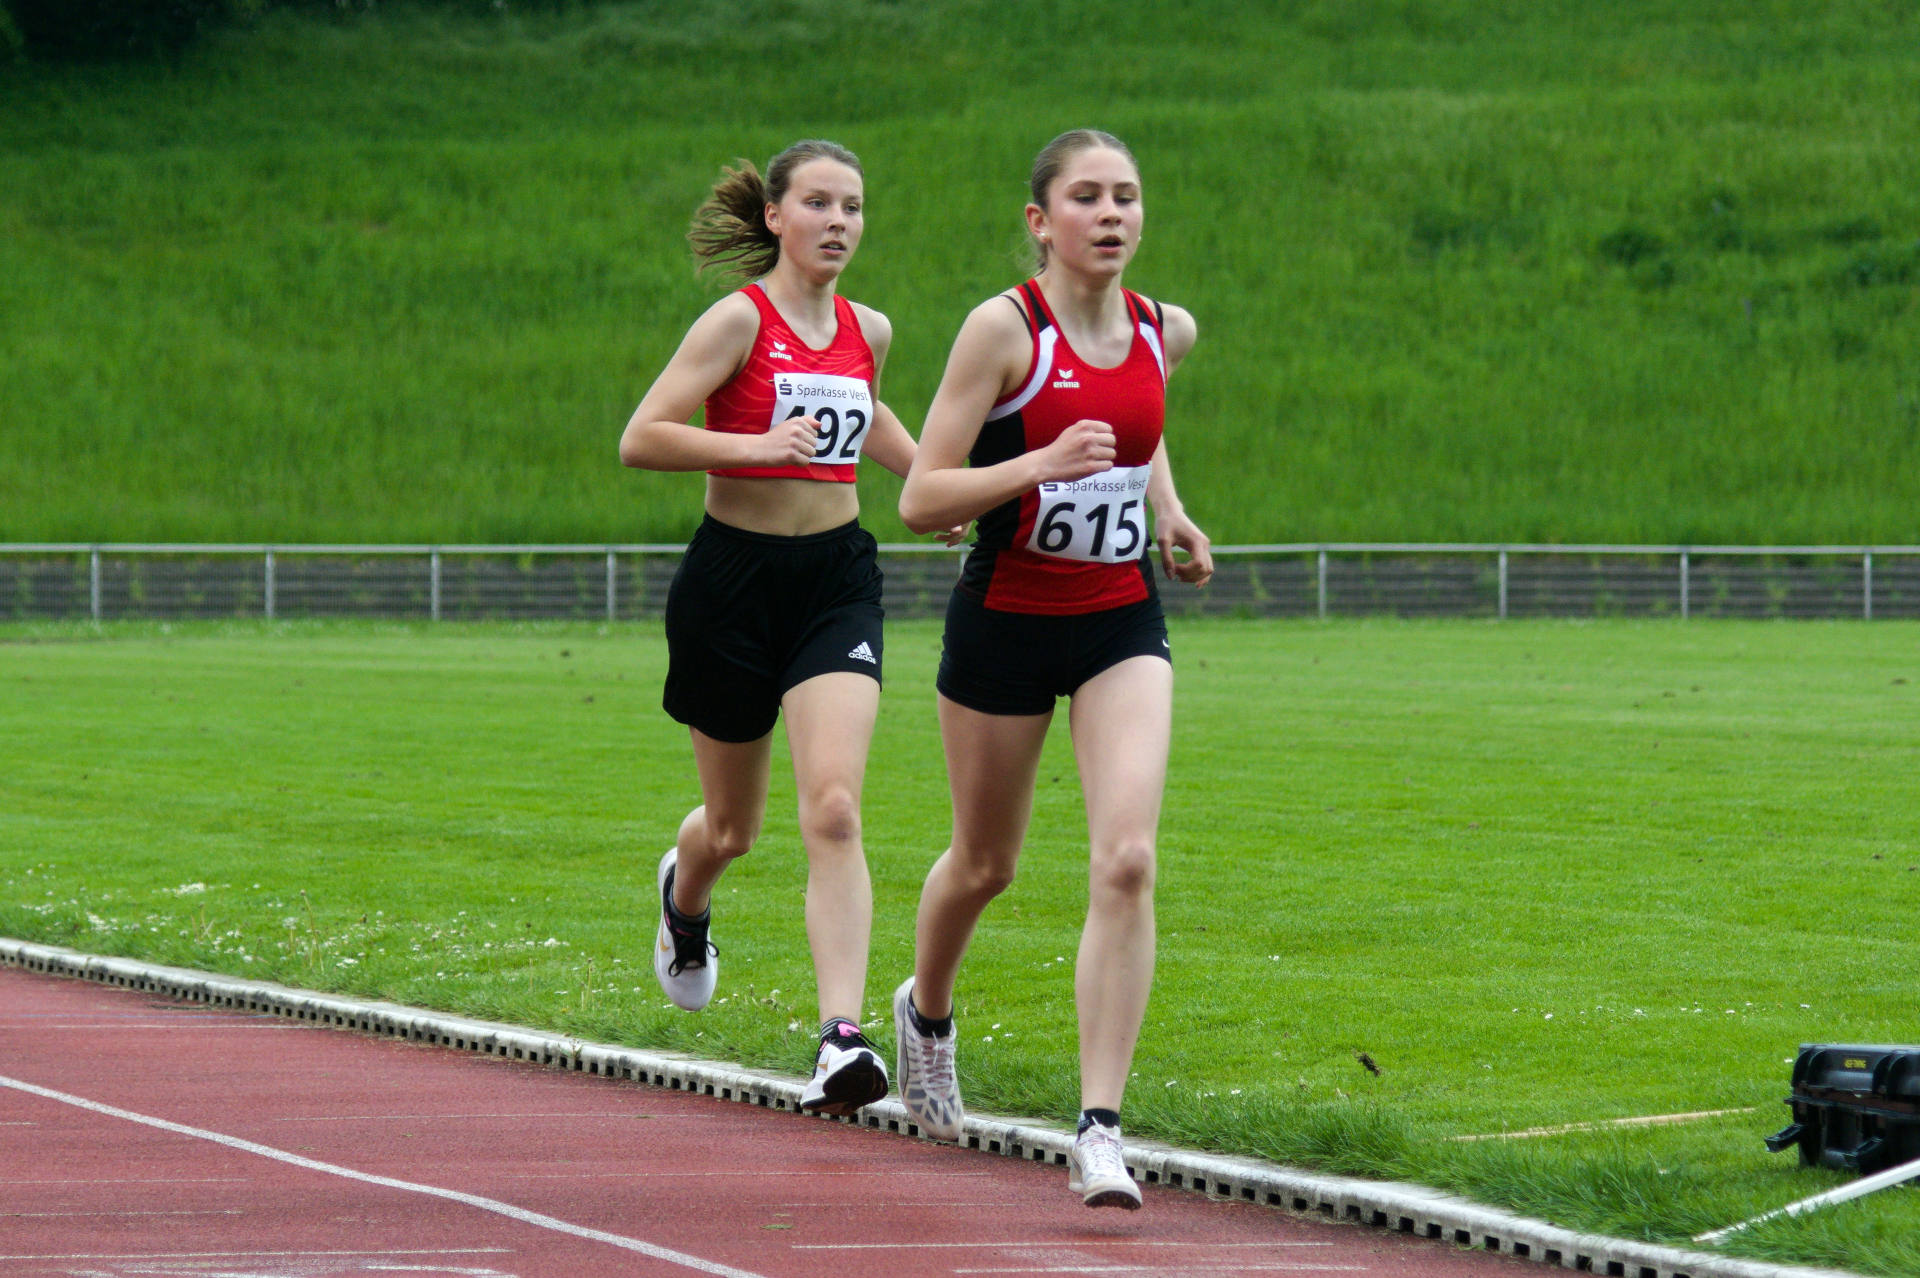 Nach einer Runde hatte Lena als Zweite das 800m Rennen gut unter Kontrolle.